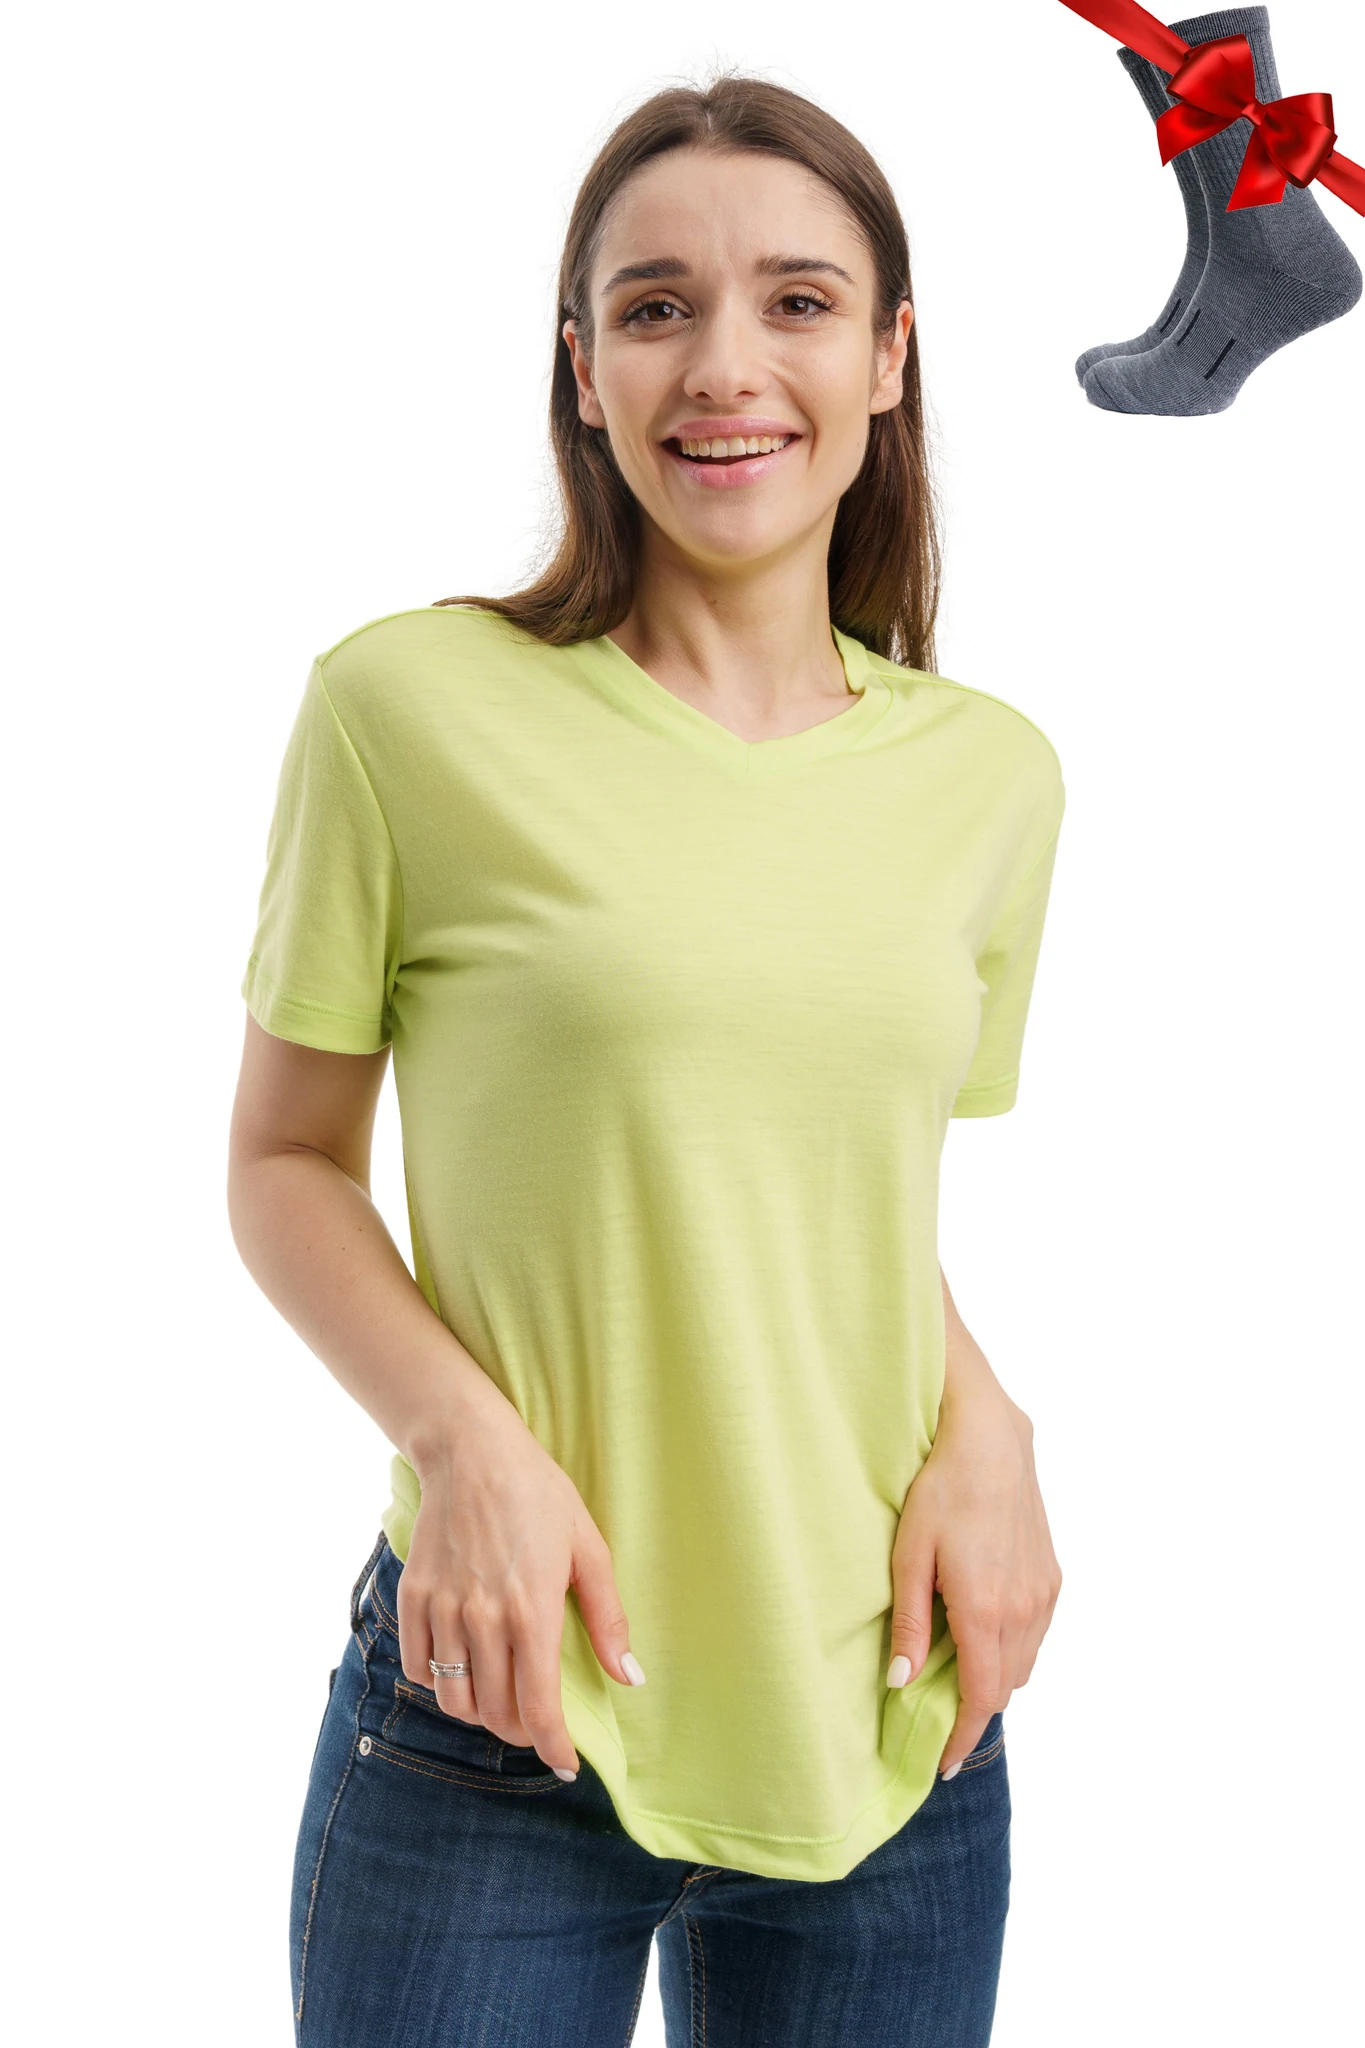 Lemon Green Merino.tech Merino Wool T Shirt Women - 100% Merino Wool Base Layer Women Short Sleeve Tee + Merino Wool Hiking Socks